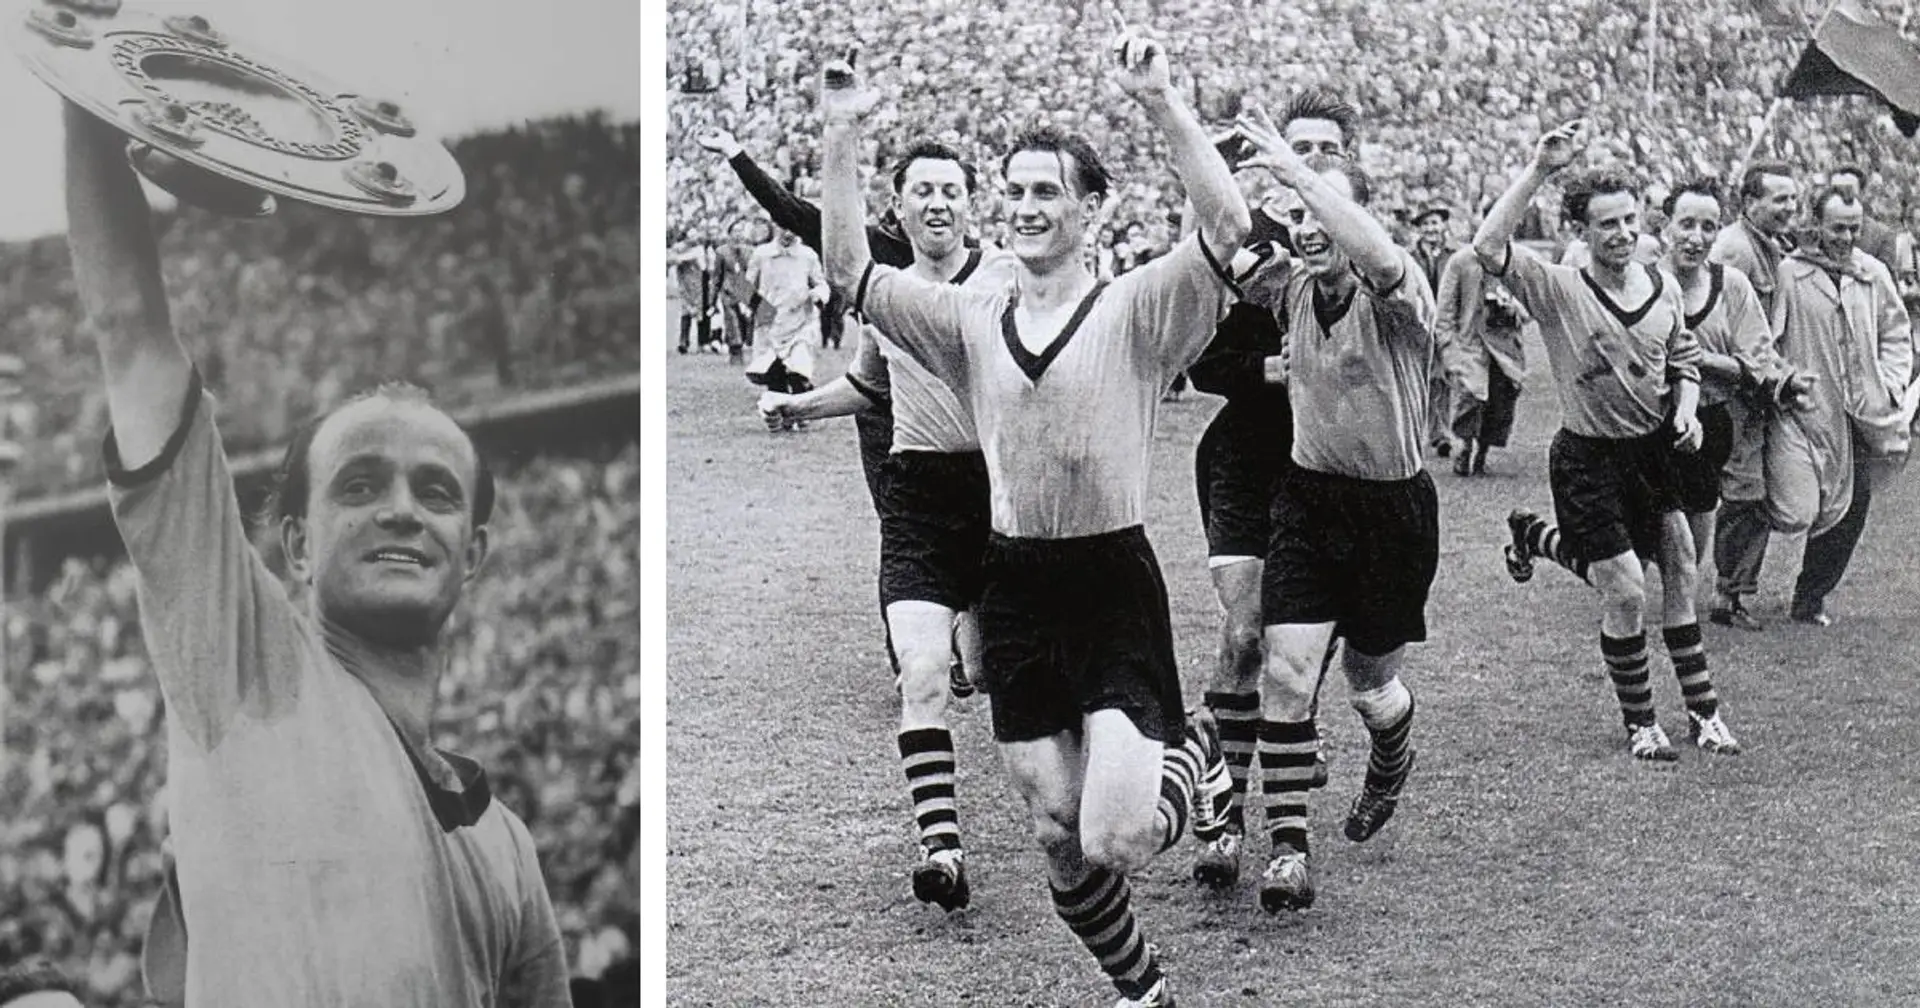 Heute vor 66 Jahren: Borussia Dortmund holt den ersten Meistertitel in der Vereinsgeschichte!